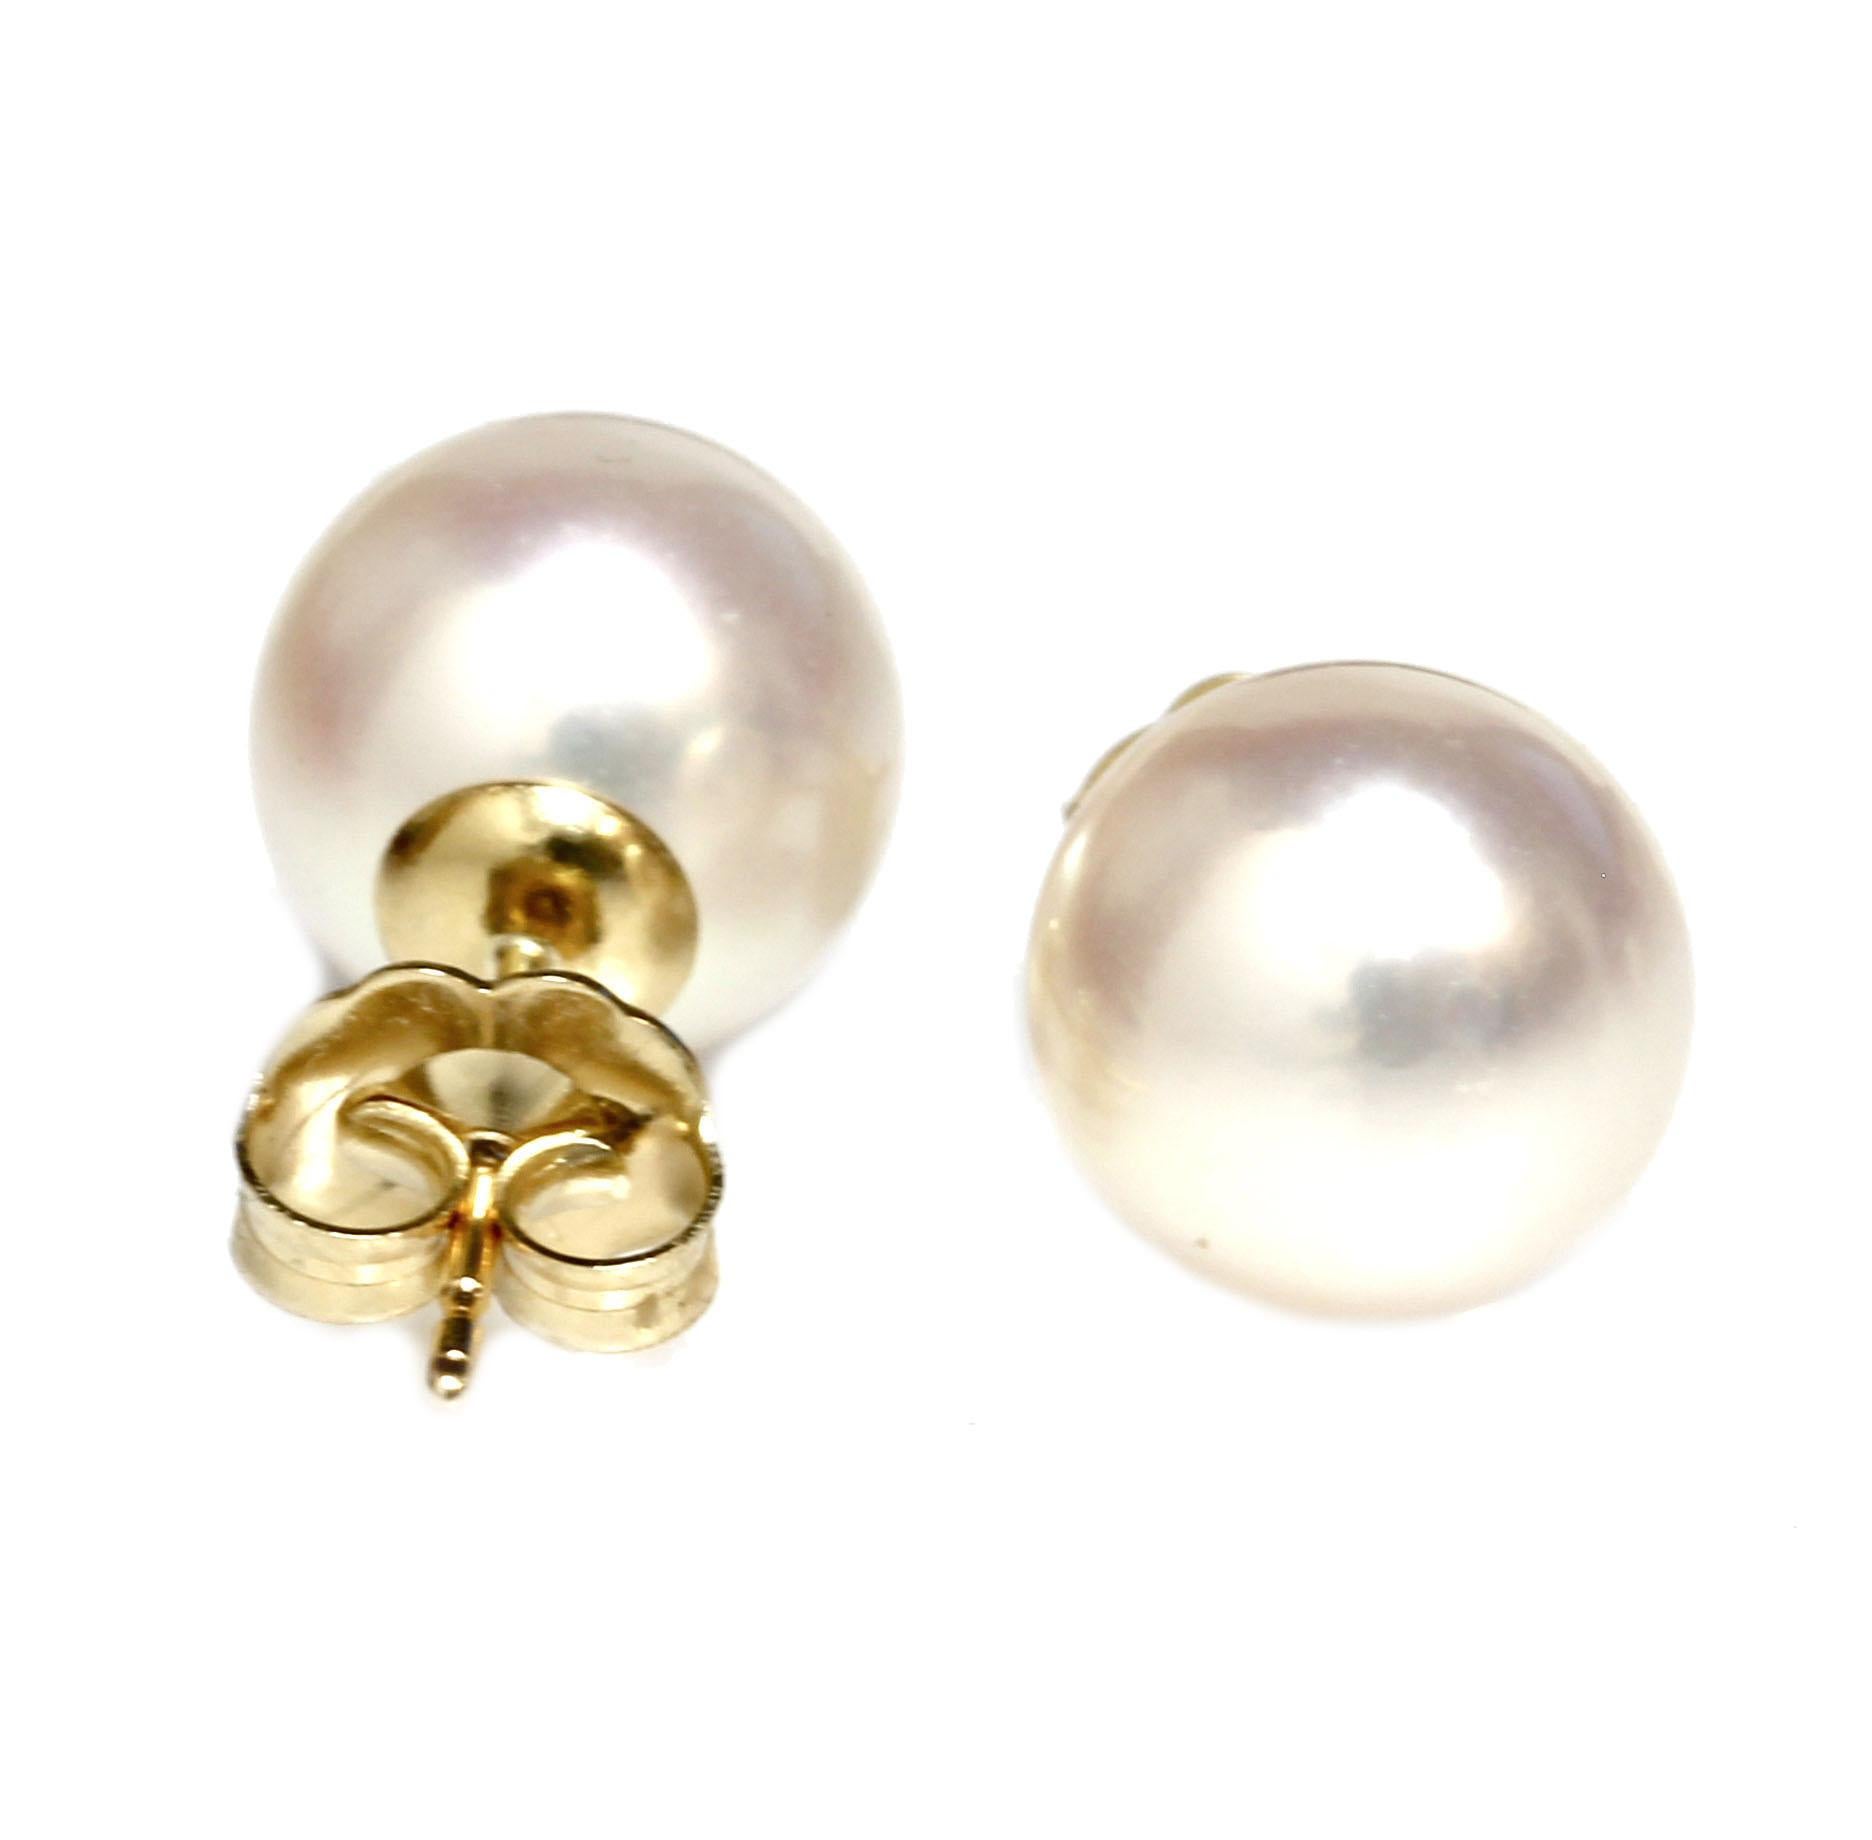 Nos boucles d'oreilles classiques en perles d'akoya d'eau salée, d'une taille de 9 - 9,5 mm avec un lustre et une nacre de premier ordre. Leur surface est d'une clarté irréprochable.  Ce sont des perles rondes parfaites de couleur blanche classique